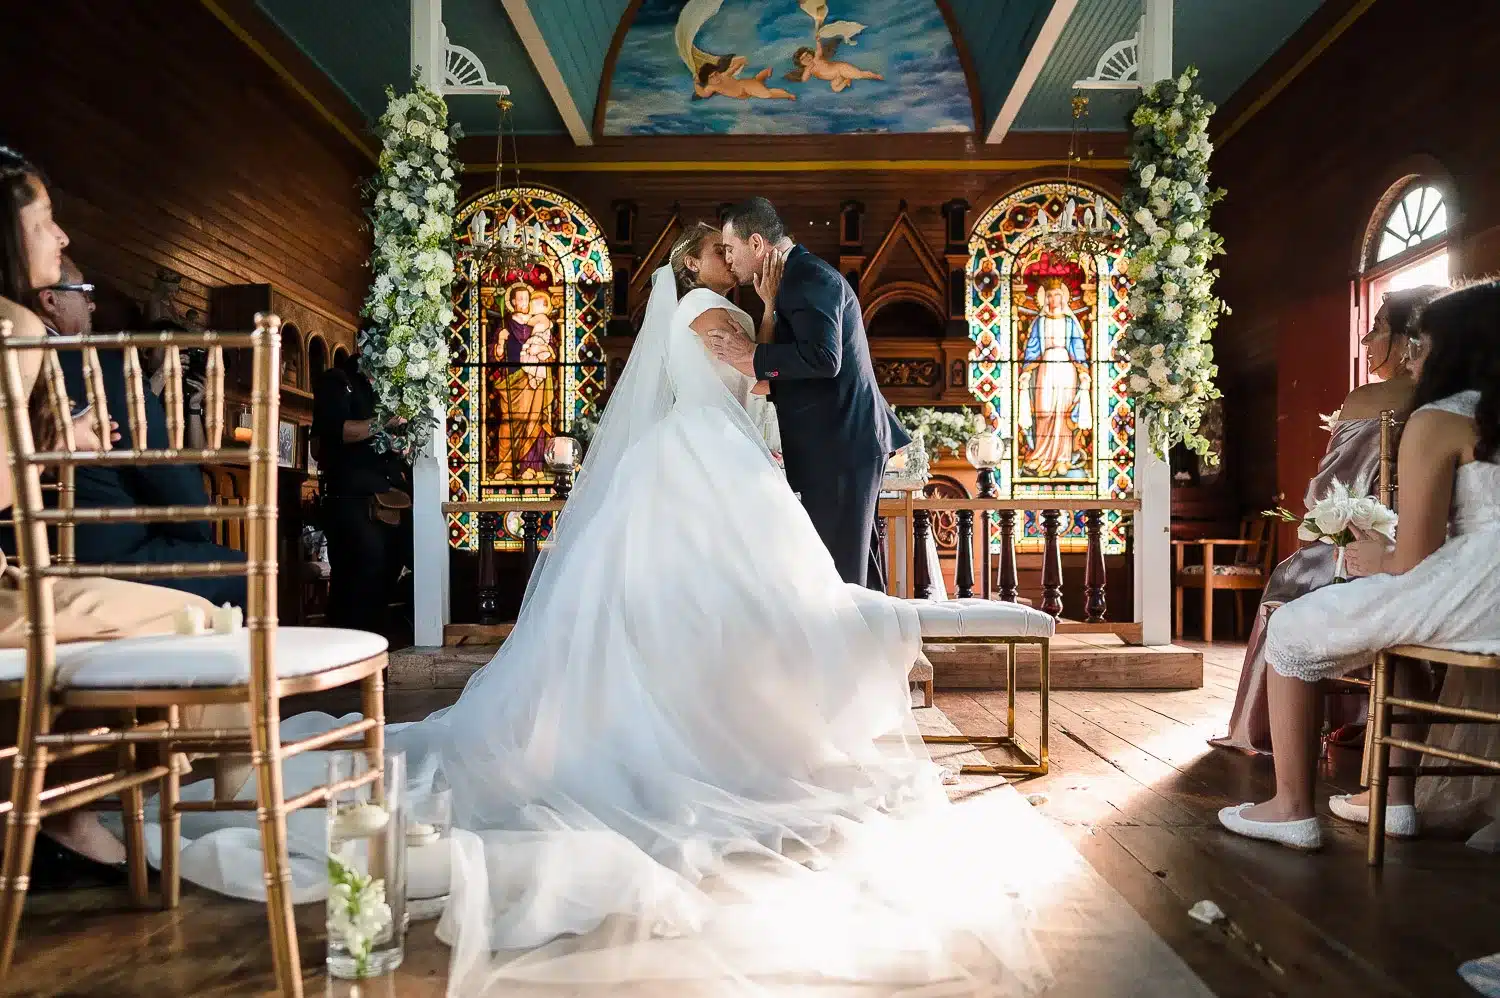 Primer beso de la nueva pareja dentro de la hermosa capilla tallada en madera.